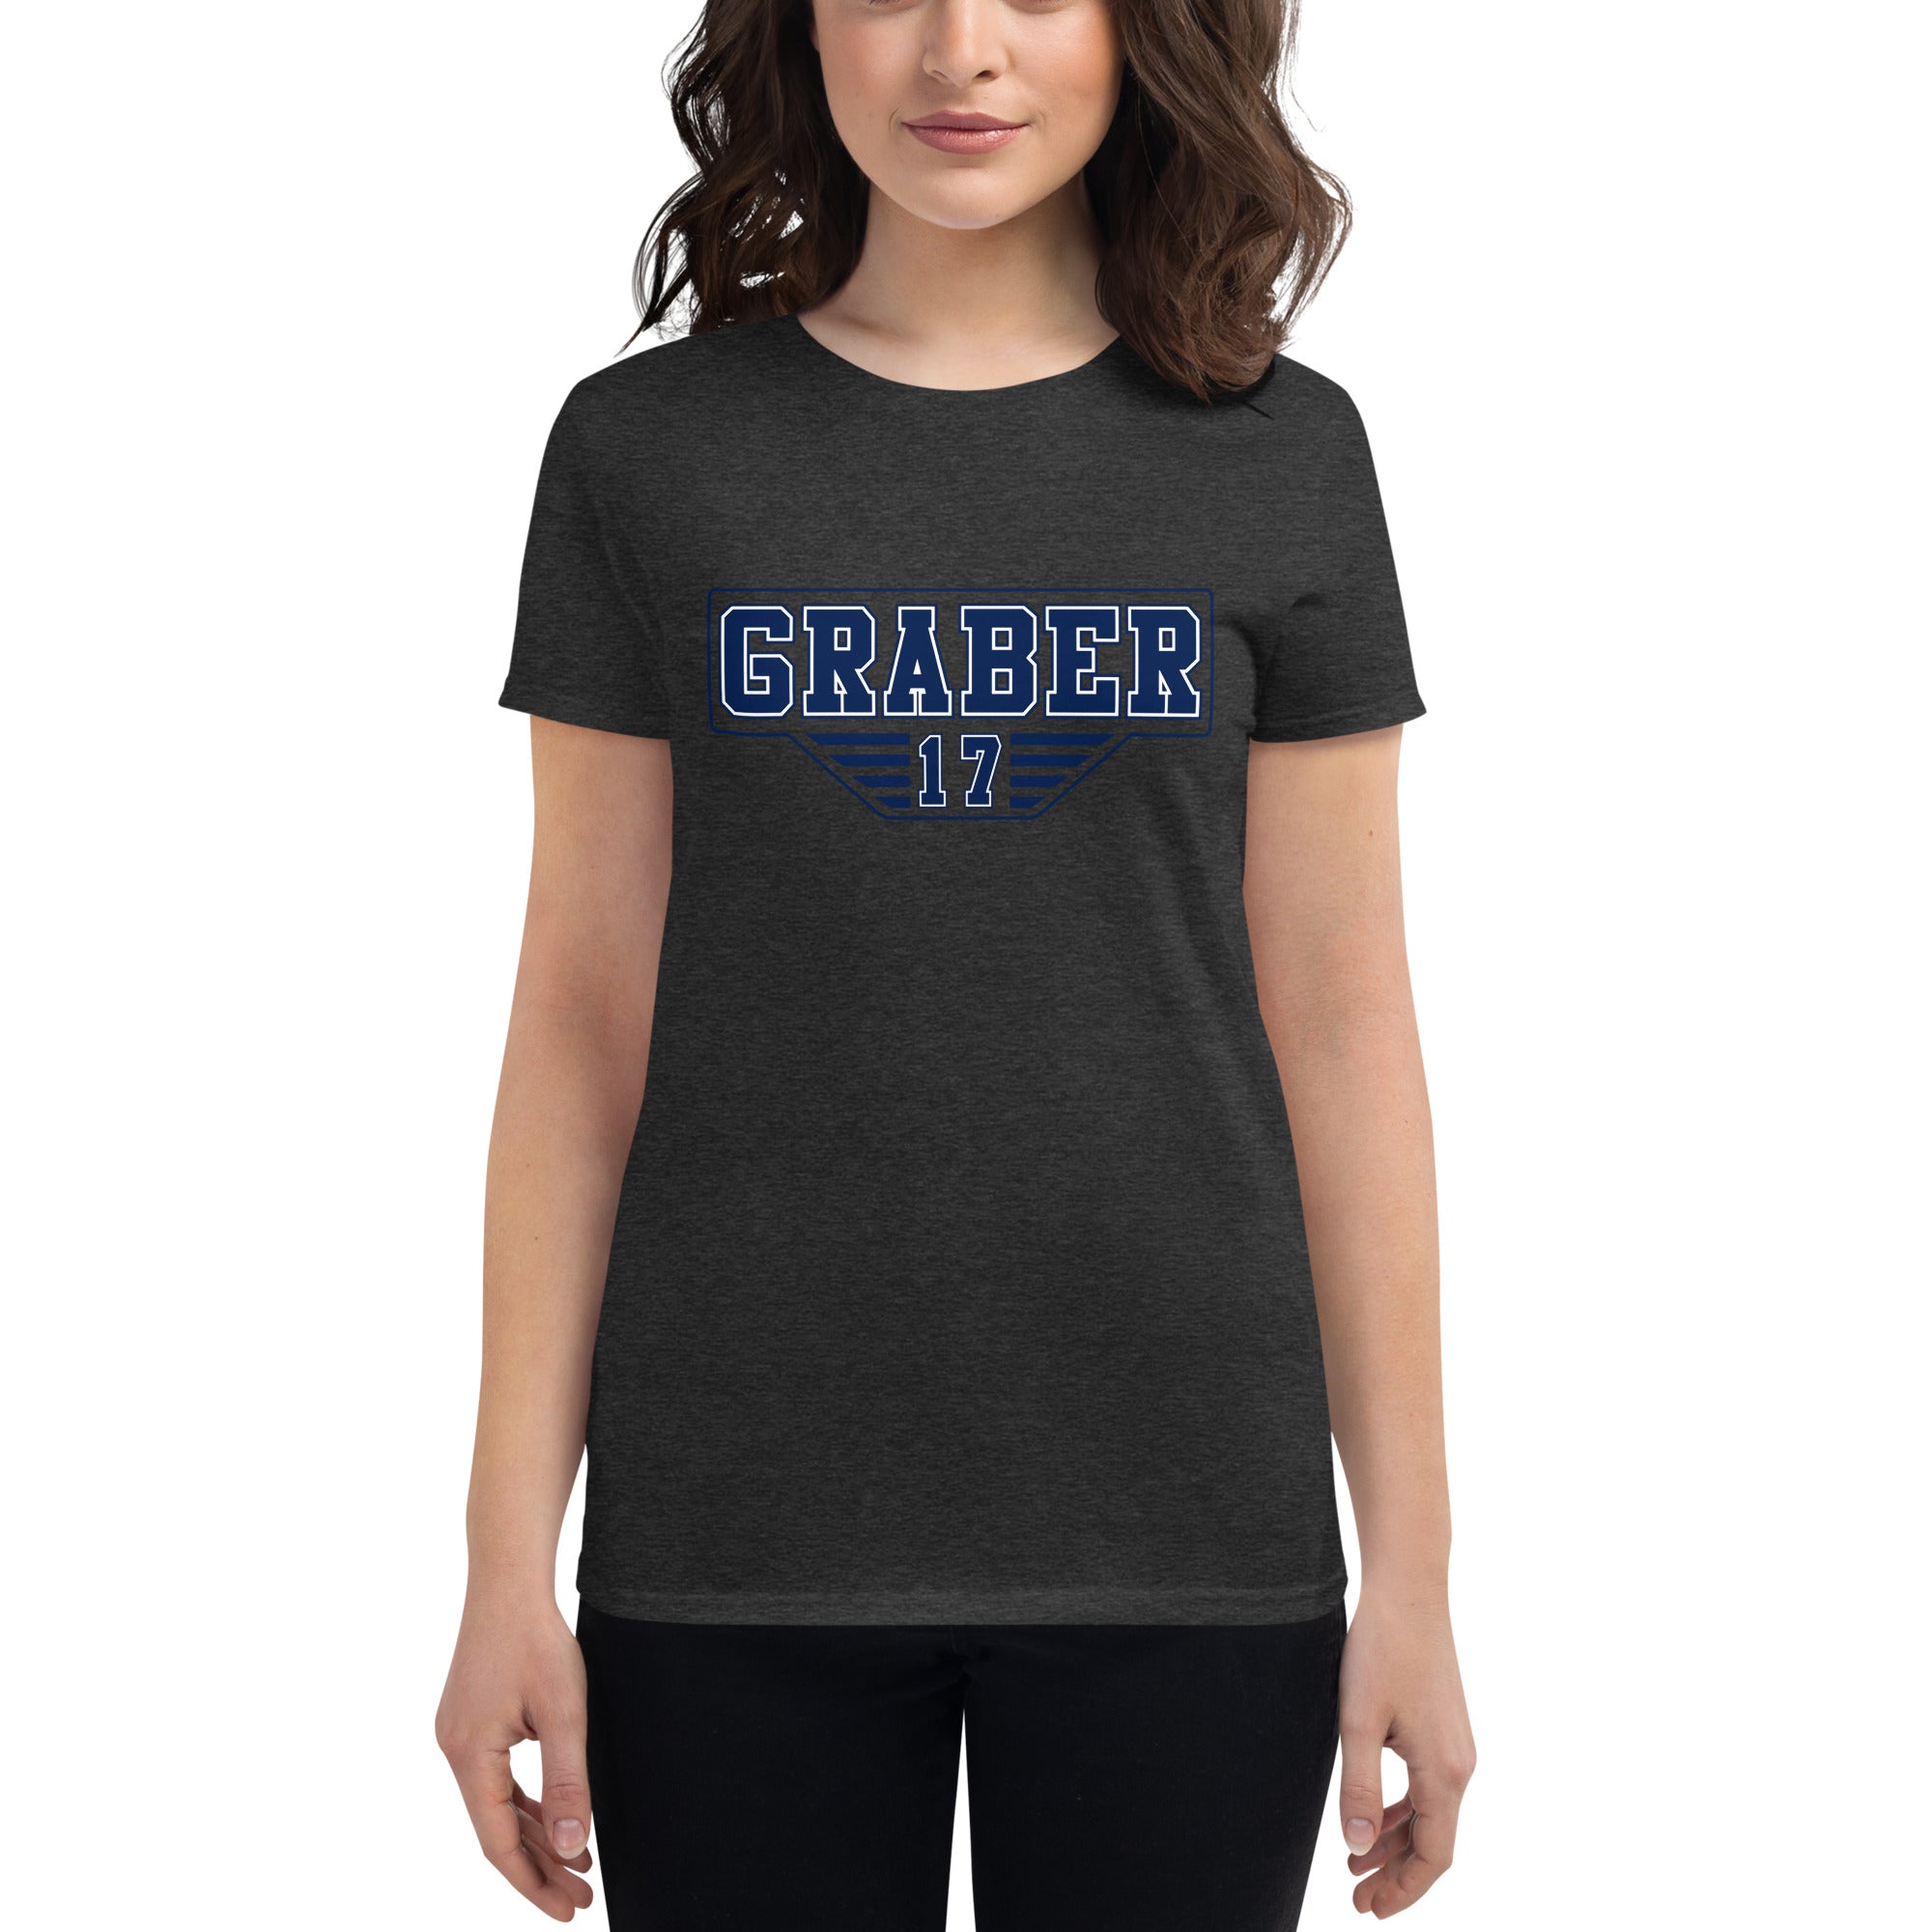 Graber #17 - Women's short sleeve t-shirt